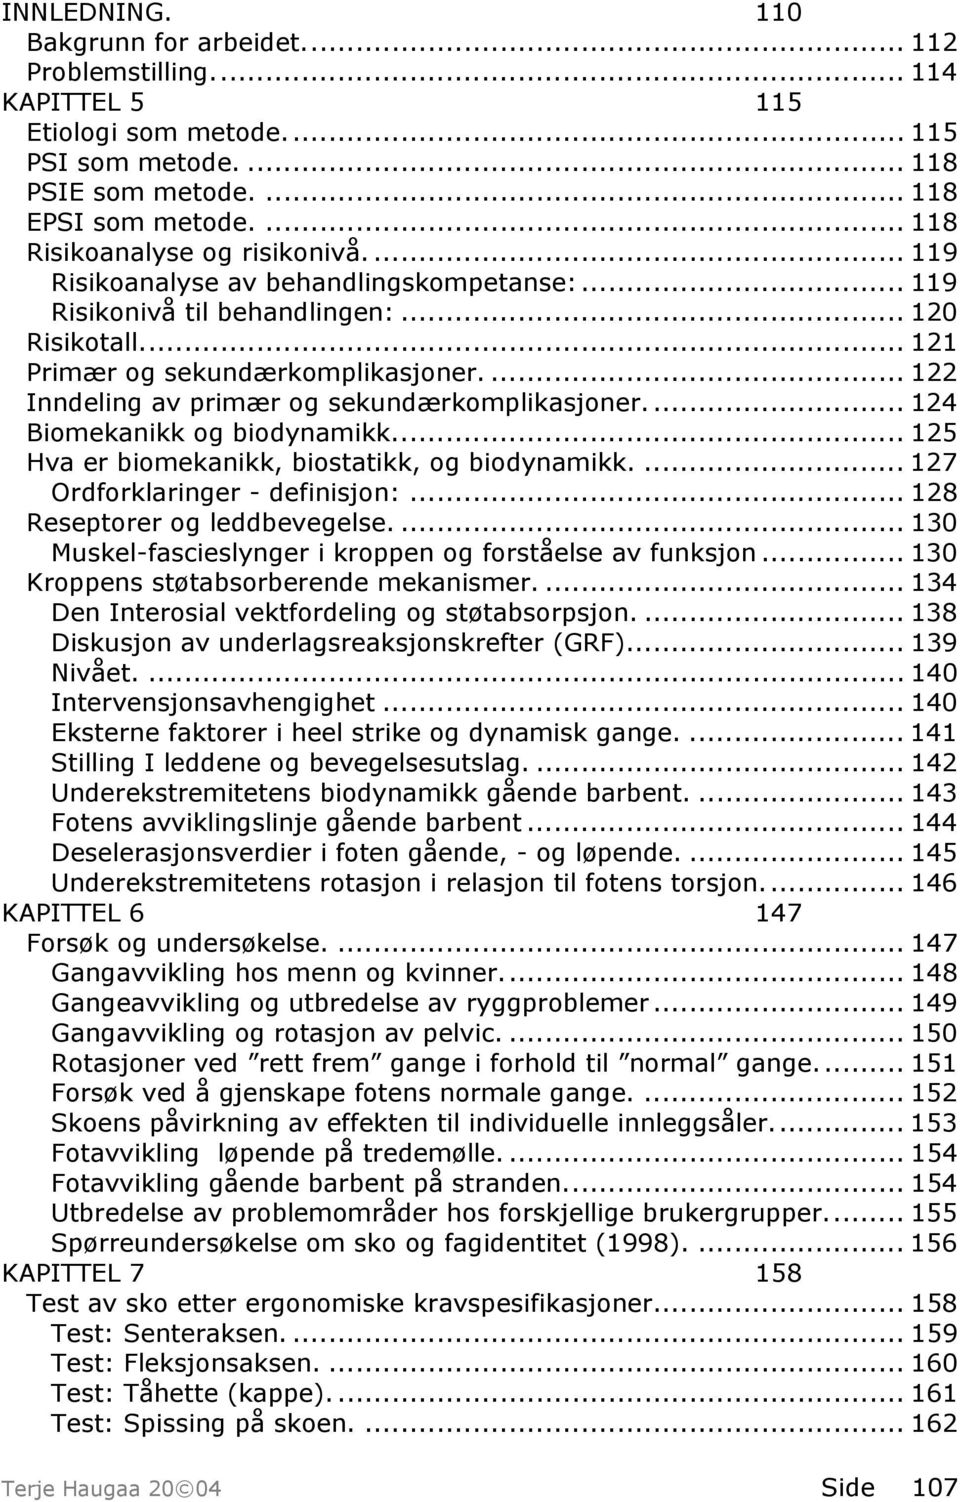 ... 122 Inndeling av primær og sekundærkomplikasjoner.... 124 Biomekanikk og biodynamikk... 125 Hva er biomekanikk, biostatikk, og biodynamikk.... 127 Ordforklaringer - definisjon:.